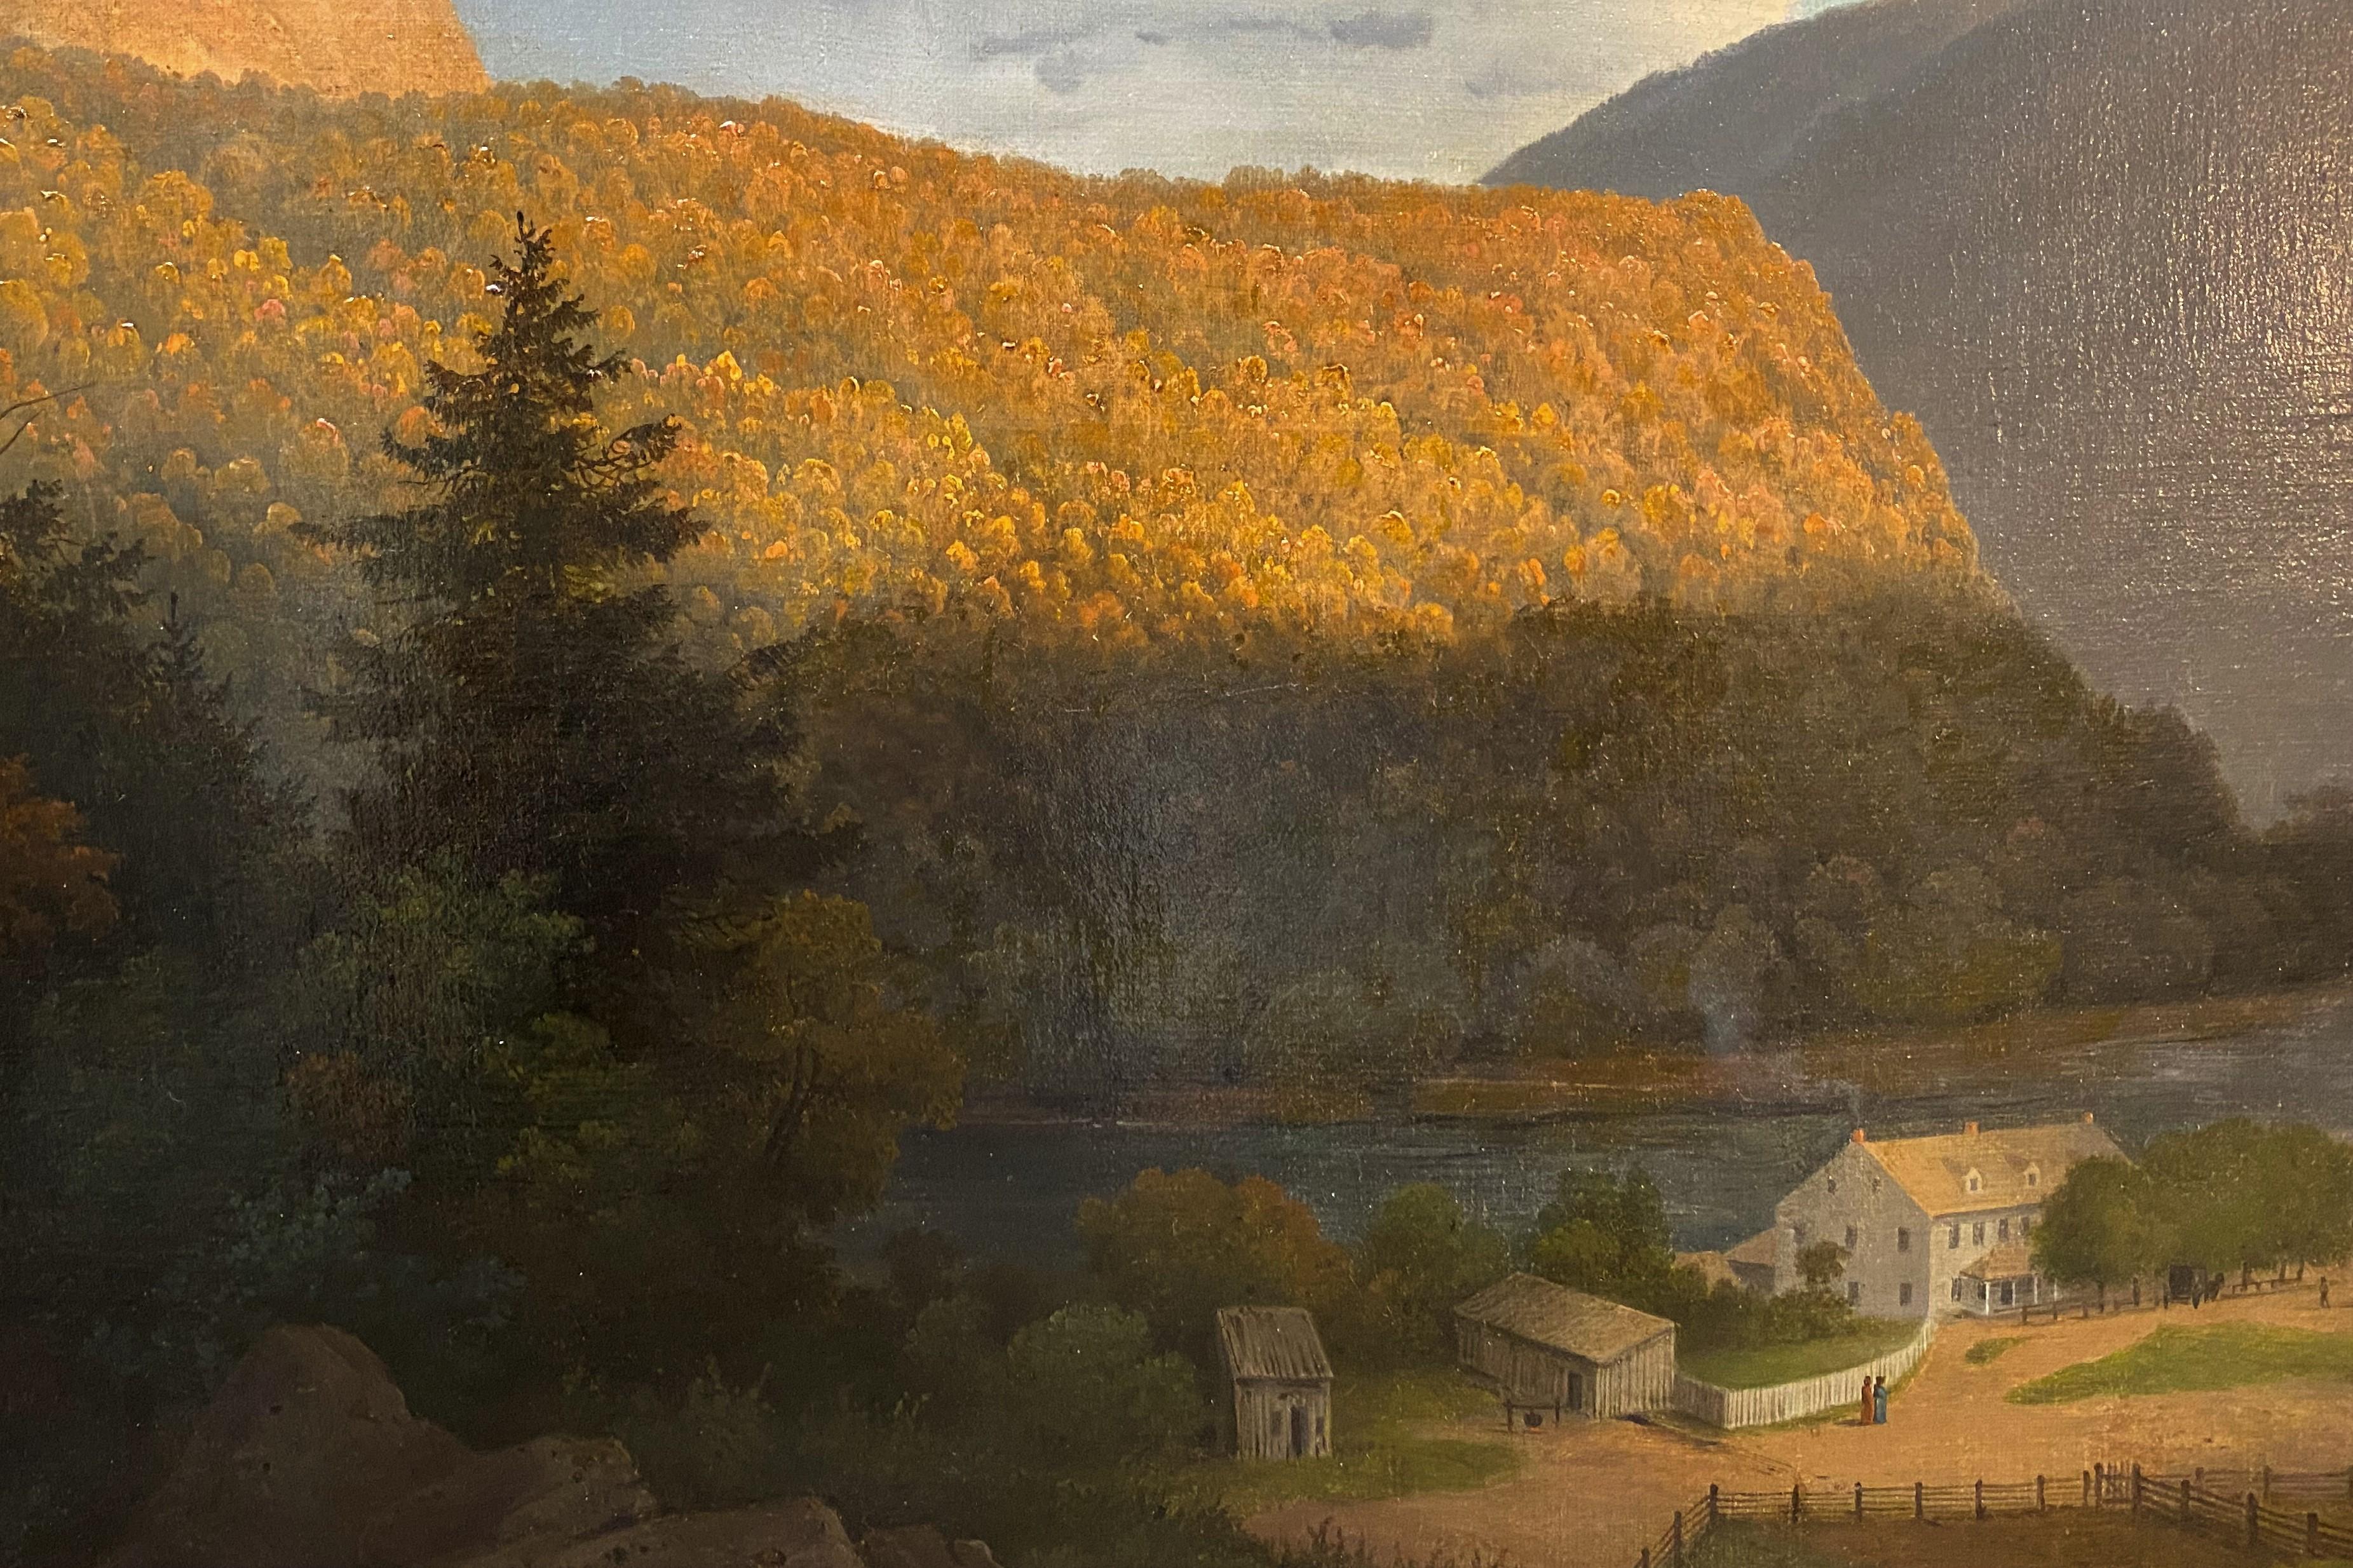 Delaware Gap - Hudson River School Painting by Régis François Gignoux